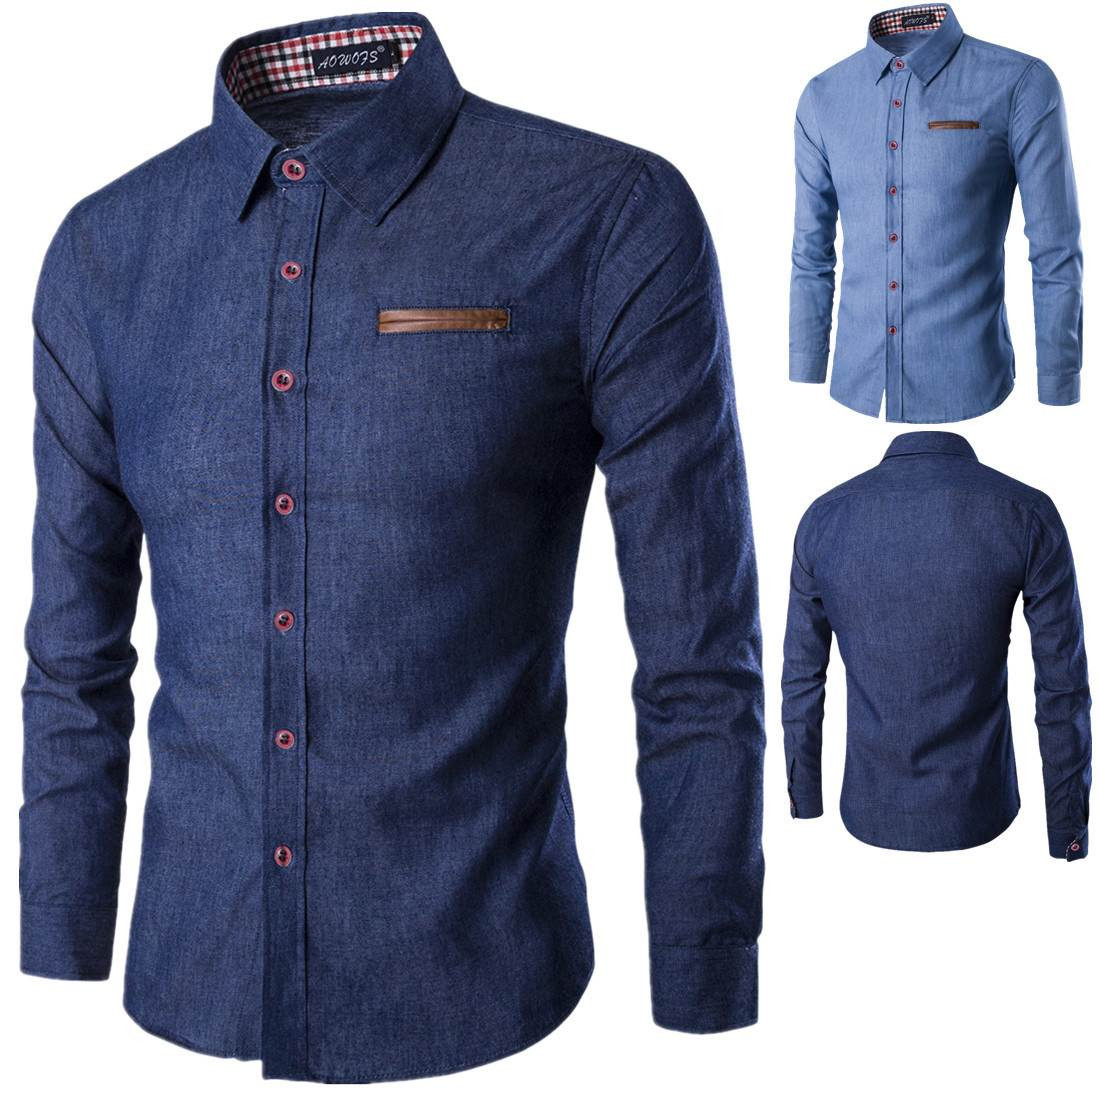 Нов модел дънкова мъжка риза с класическа яка в син цвят